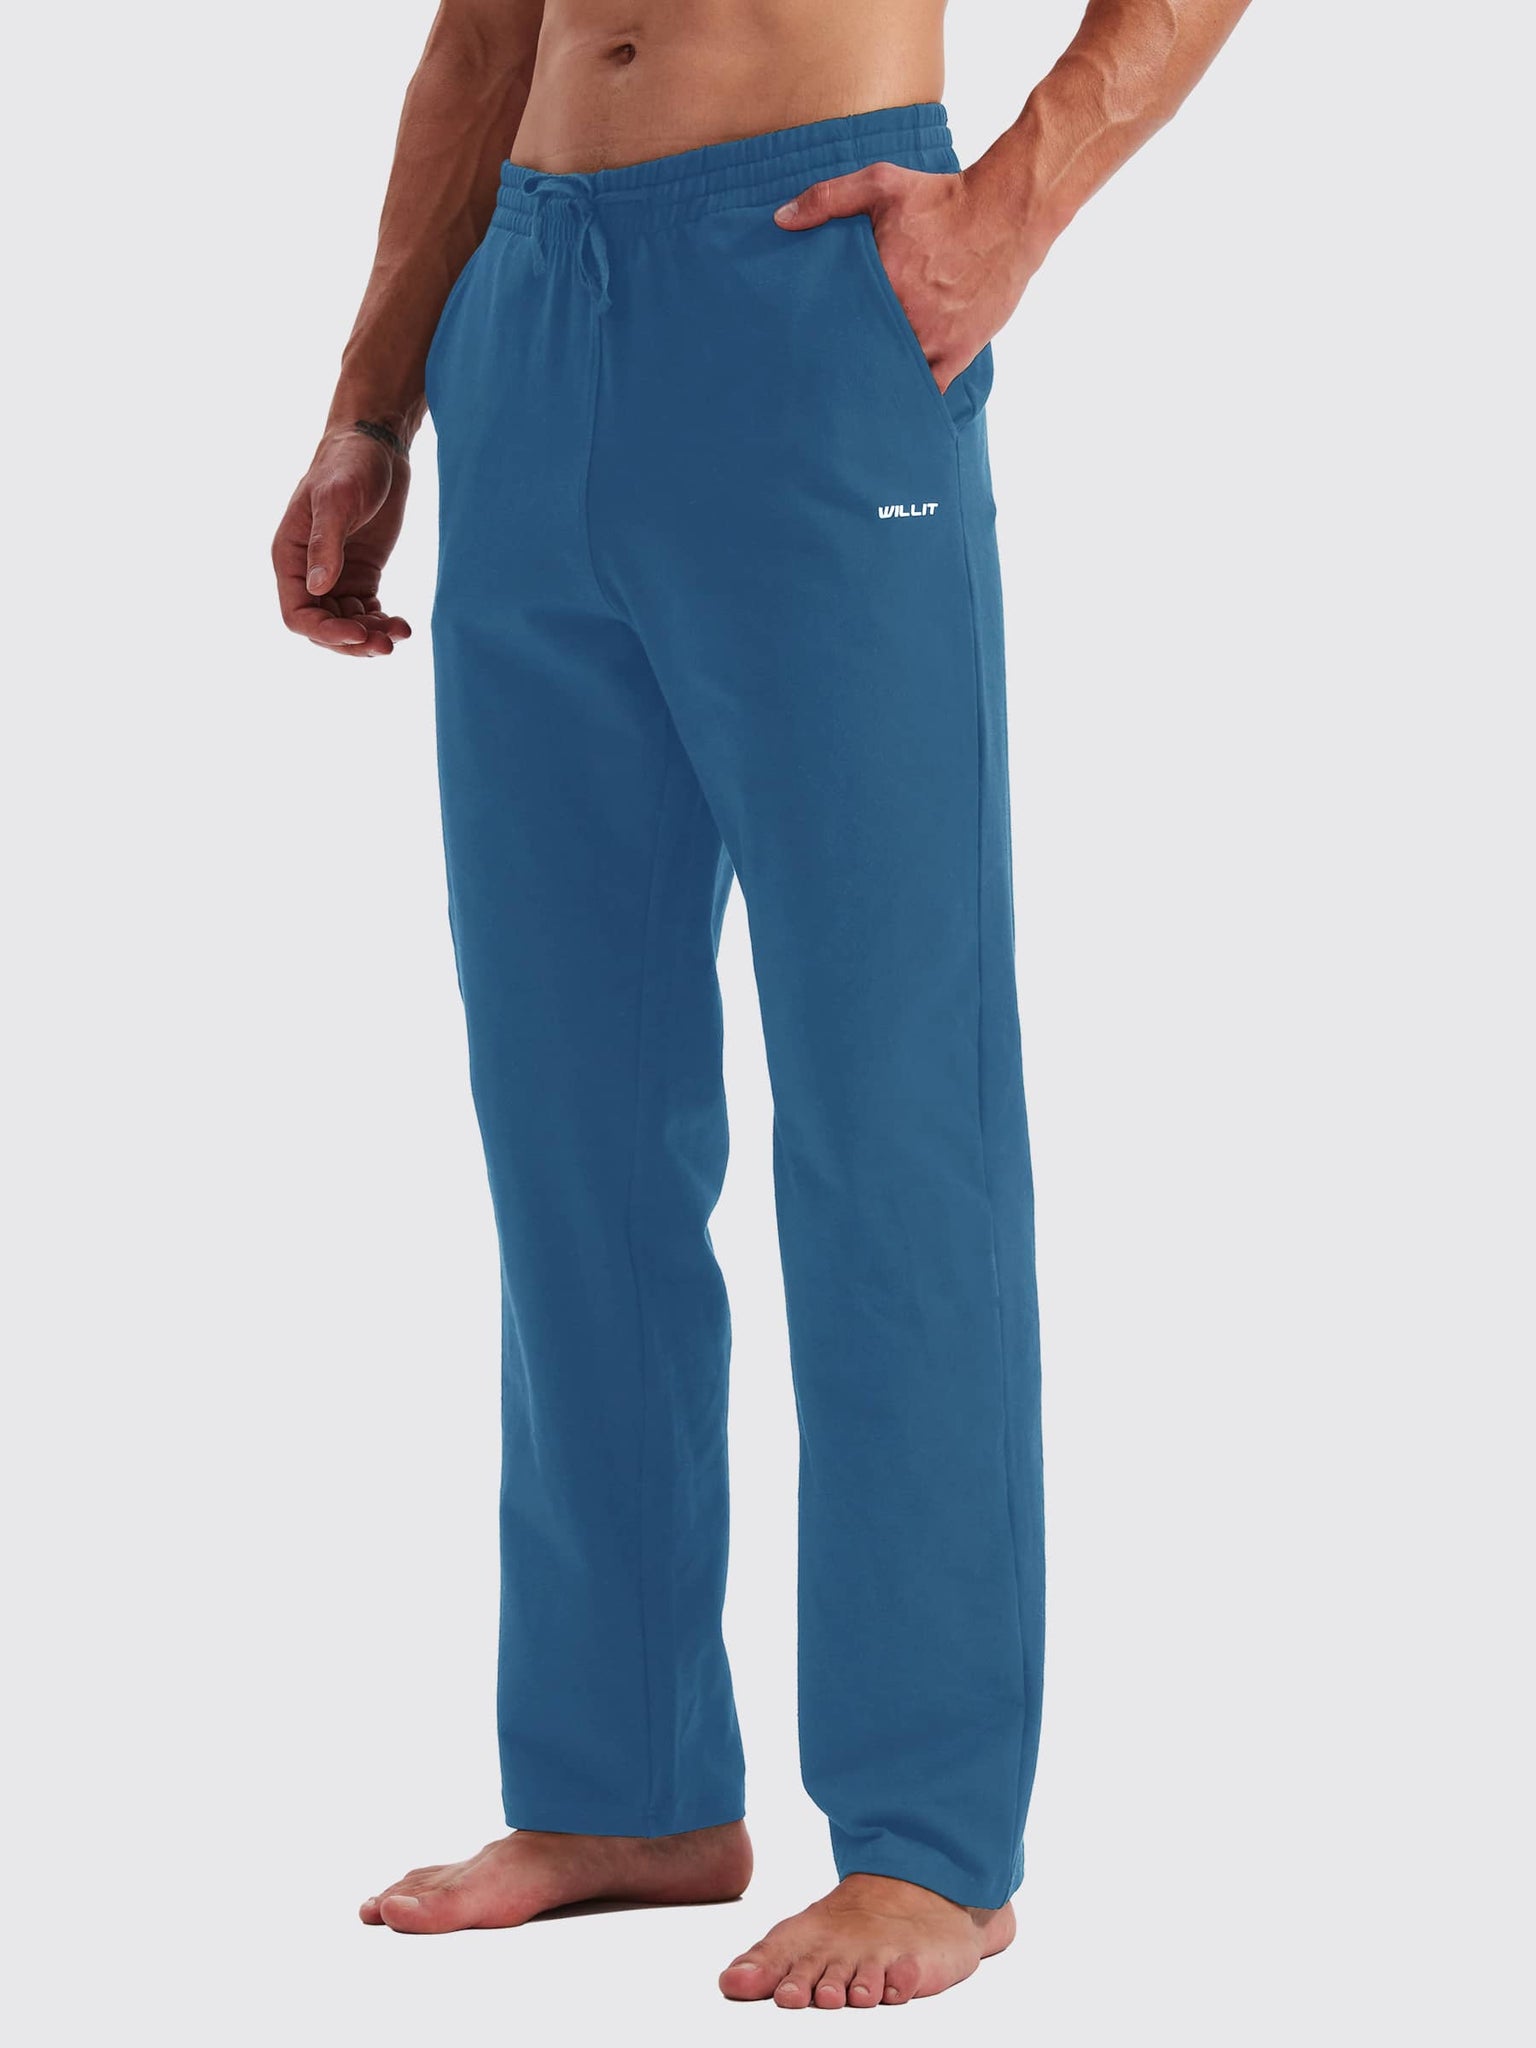 Men's Cotton Yoga Balance Sweatpants_Blue_model4